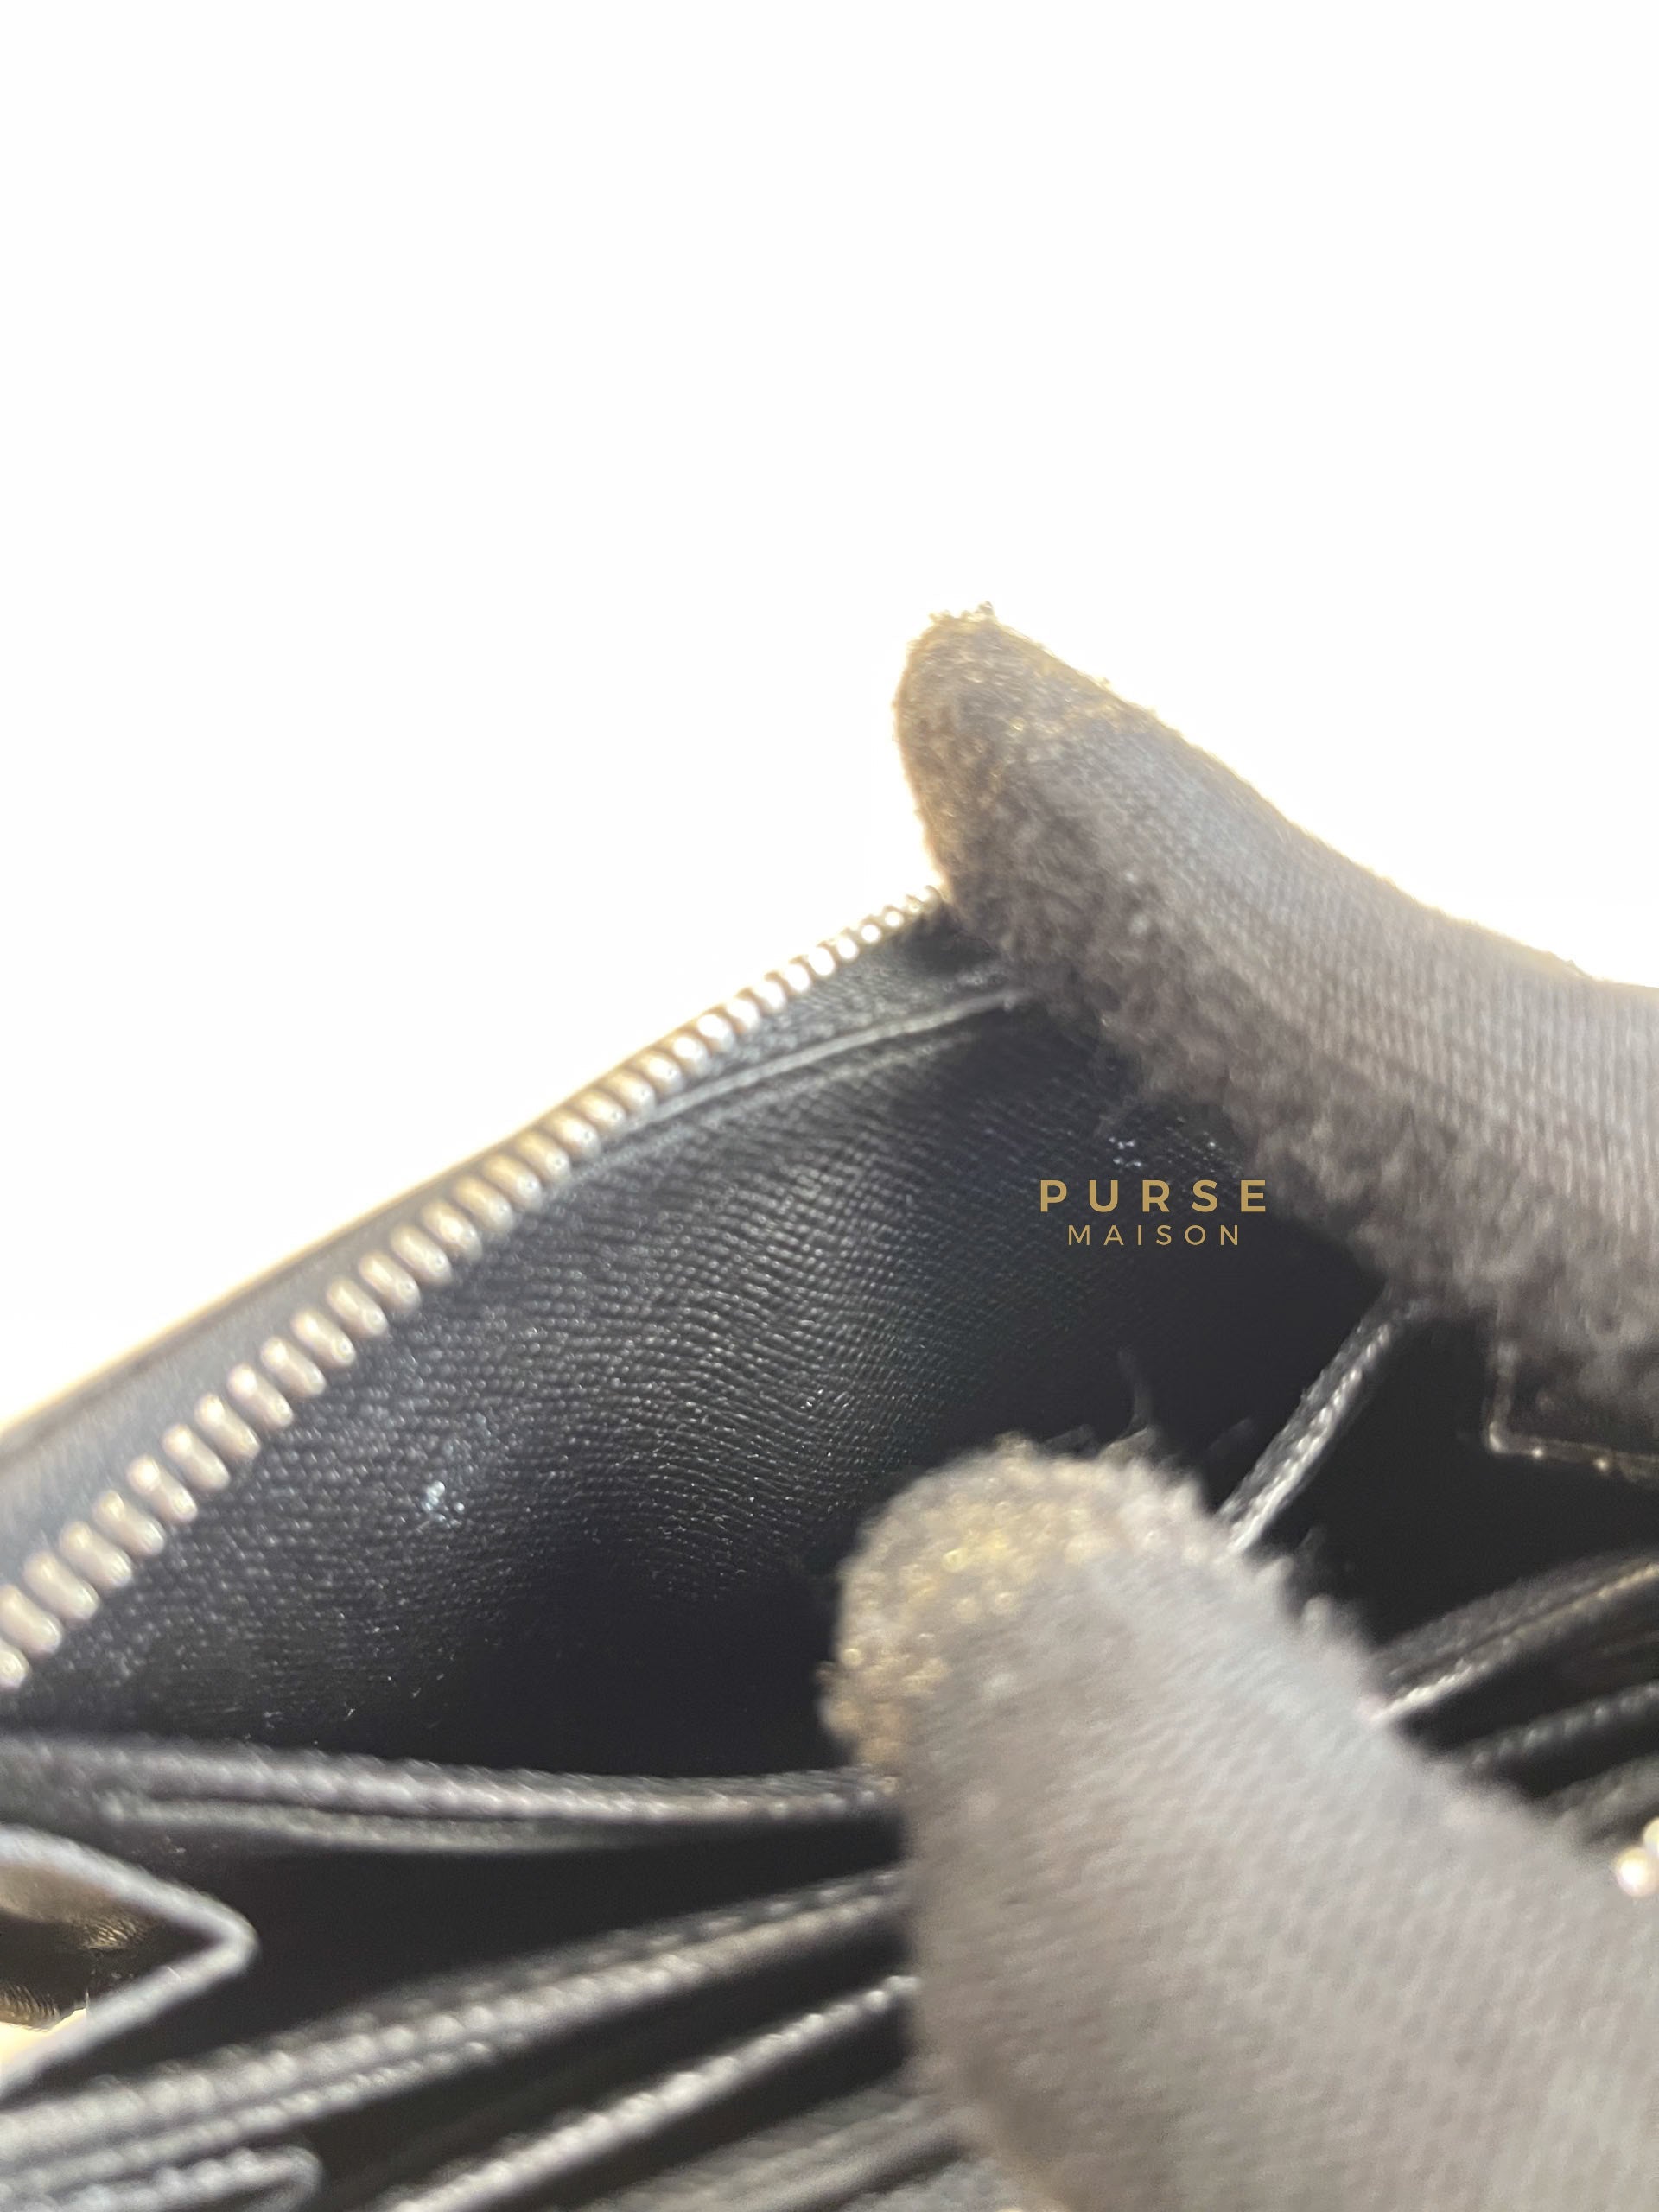 Louis Vuitton Zippy Coin Purse in Damier Graphite Canvas (Date Code: MI1191) | Purse Maison Luxury Bags Shop